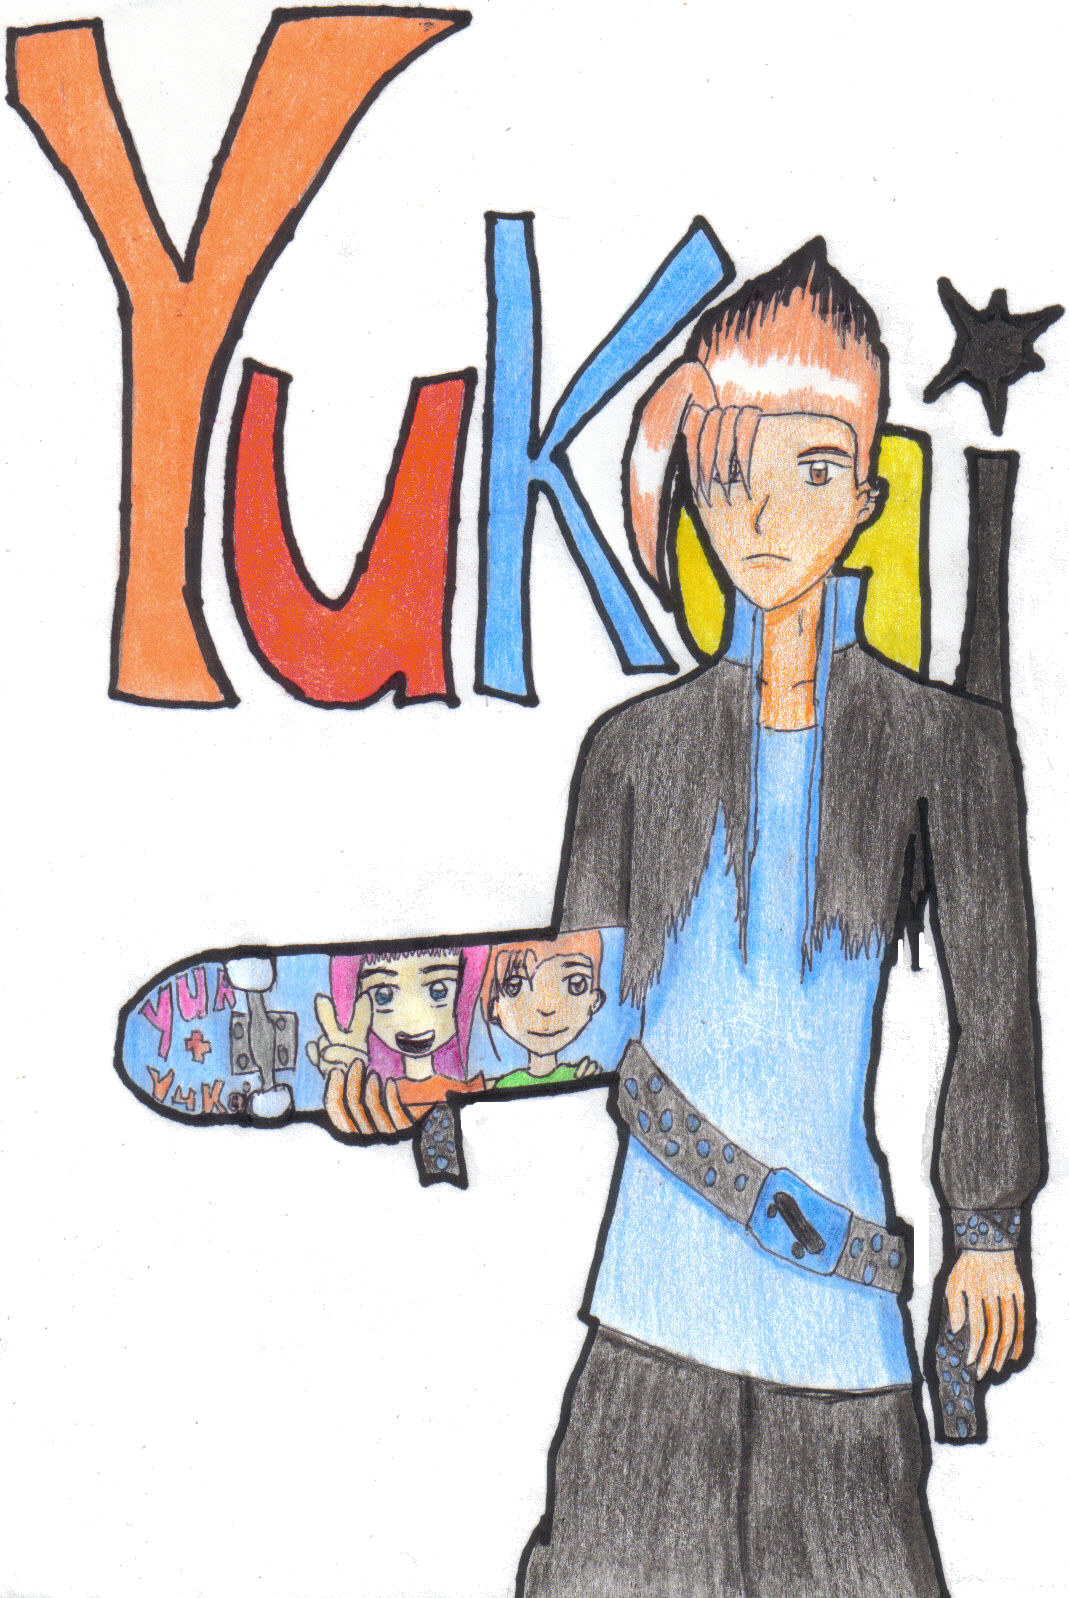 New Yukai! (the good) by Yukaai